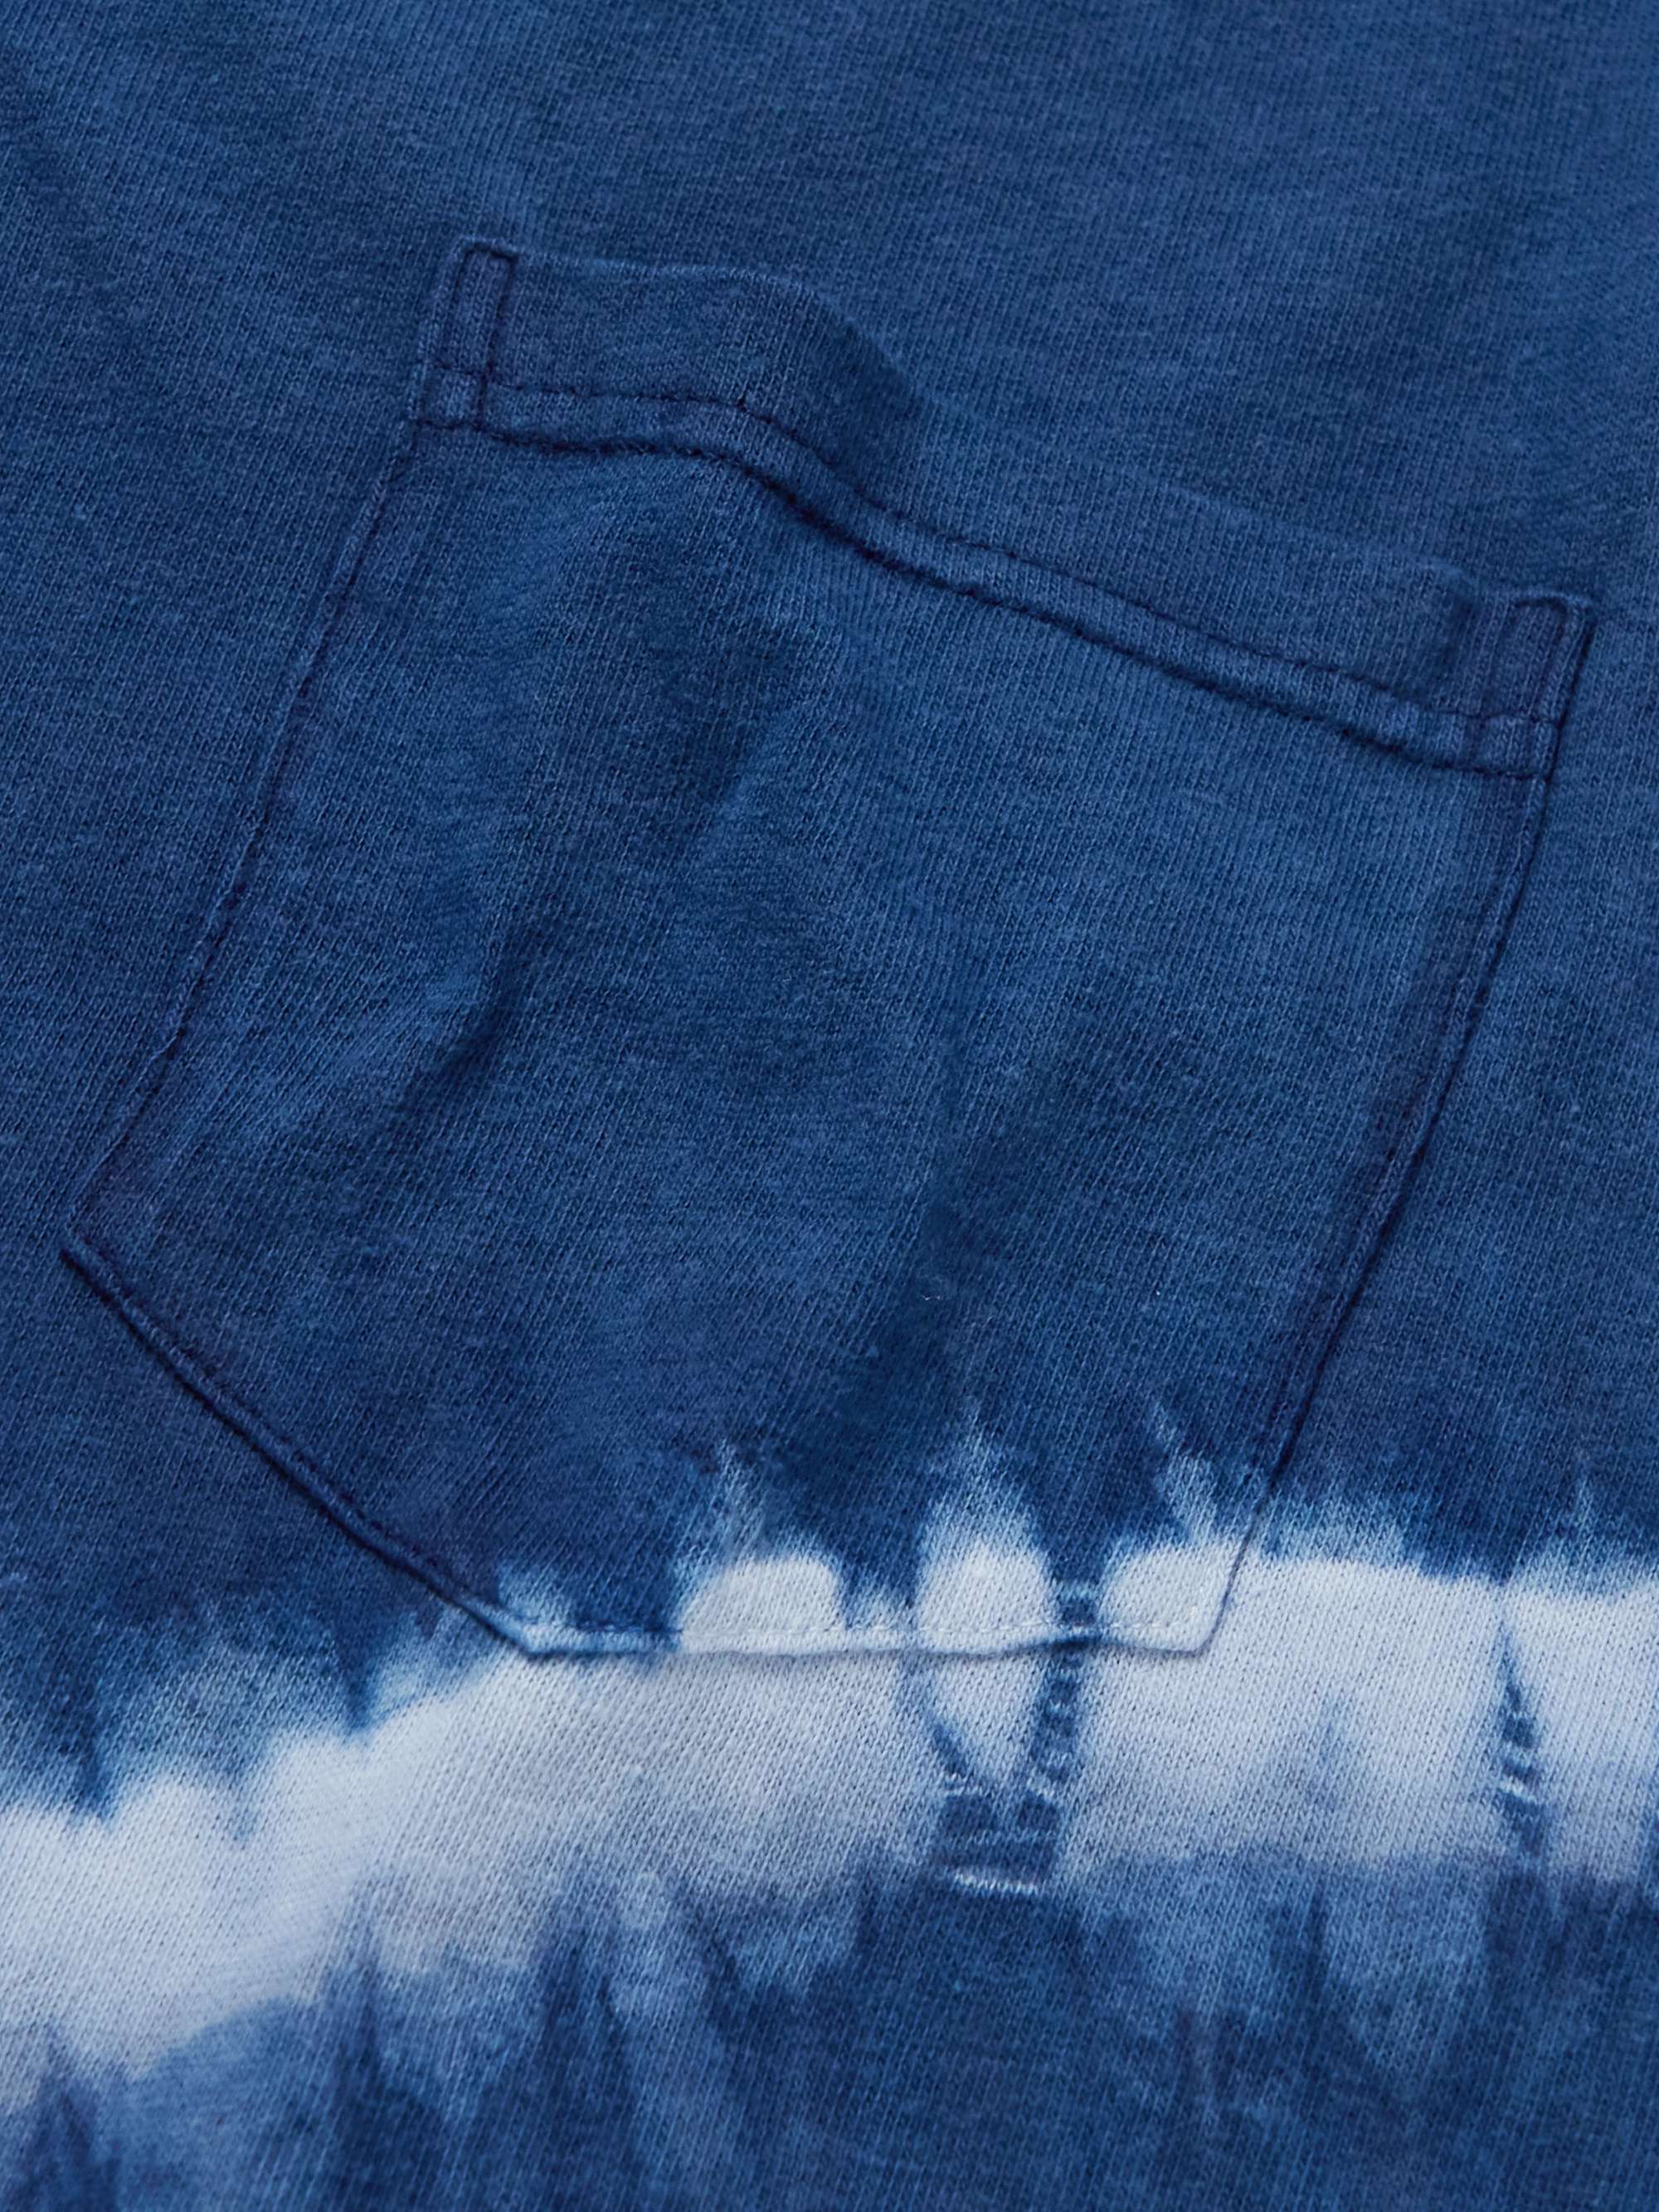 BLUE BLUE JAPAN Tie-Dyed Slub Cotton-Jersey T-Shirt